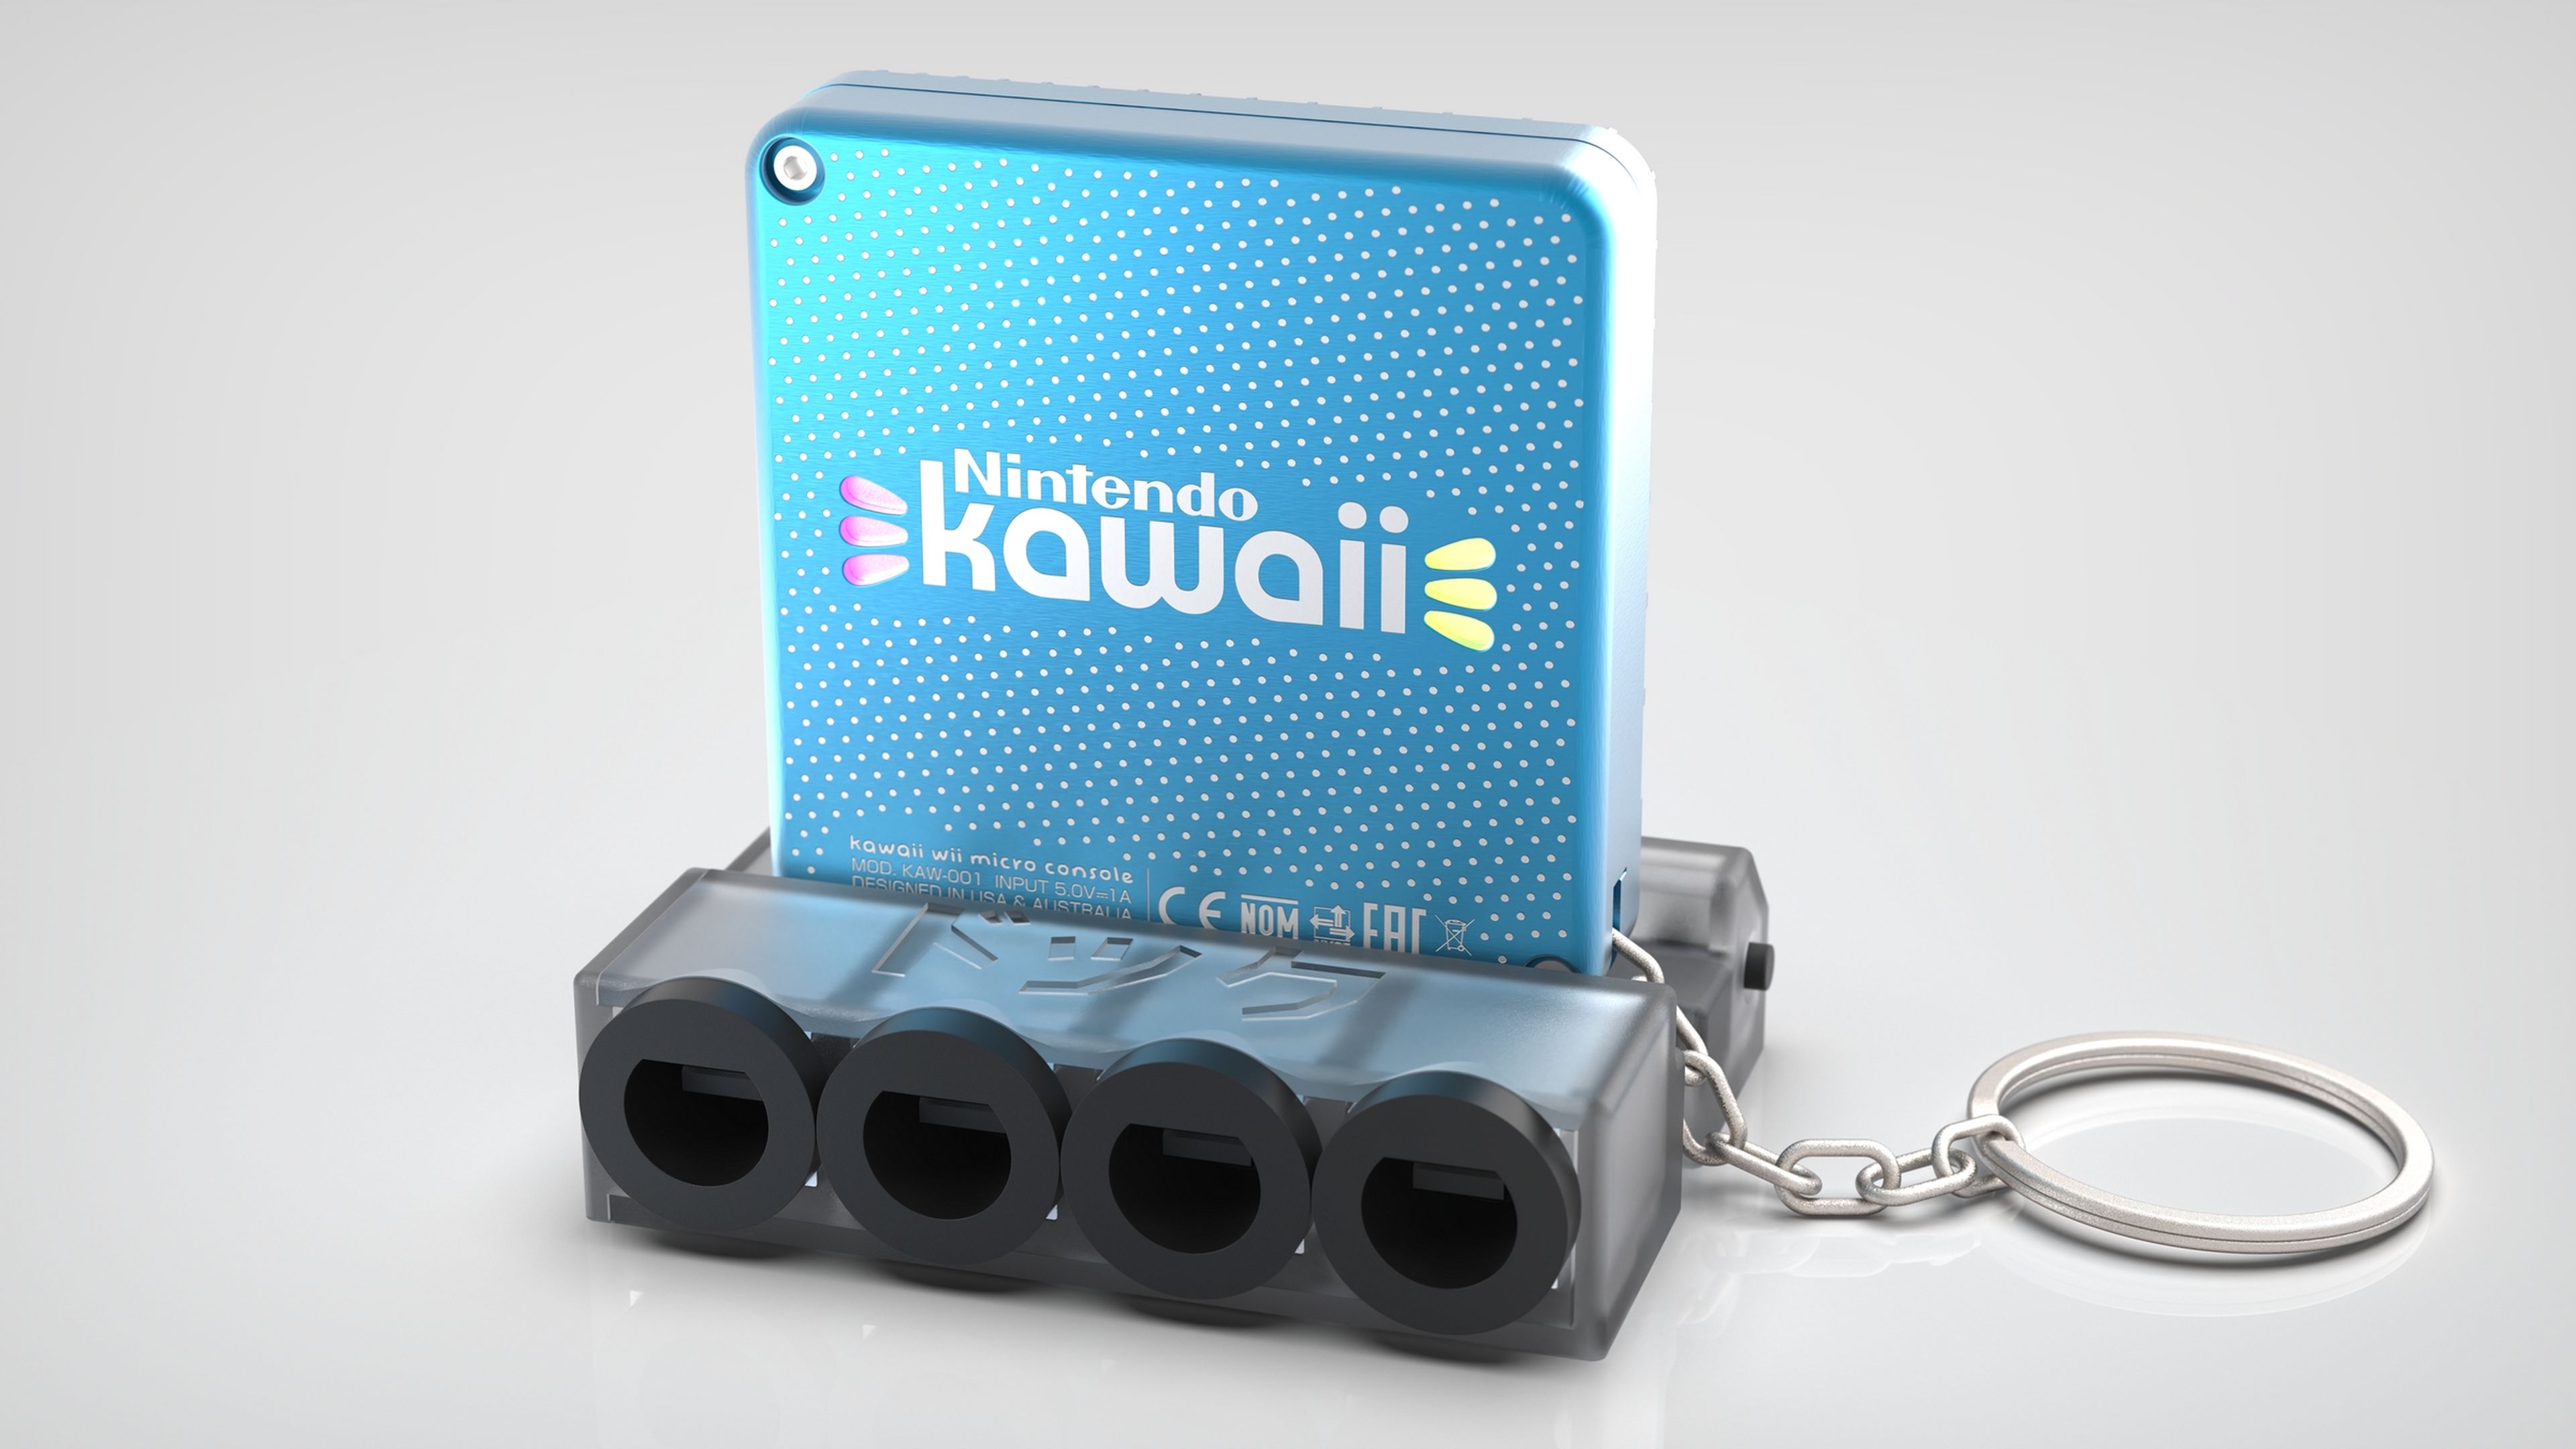 Nintendo Kawaii, la consola Nintendo Wii que cabe en un llavero